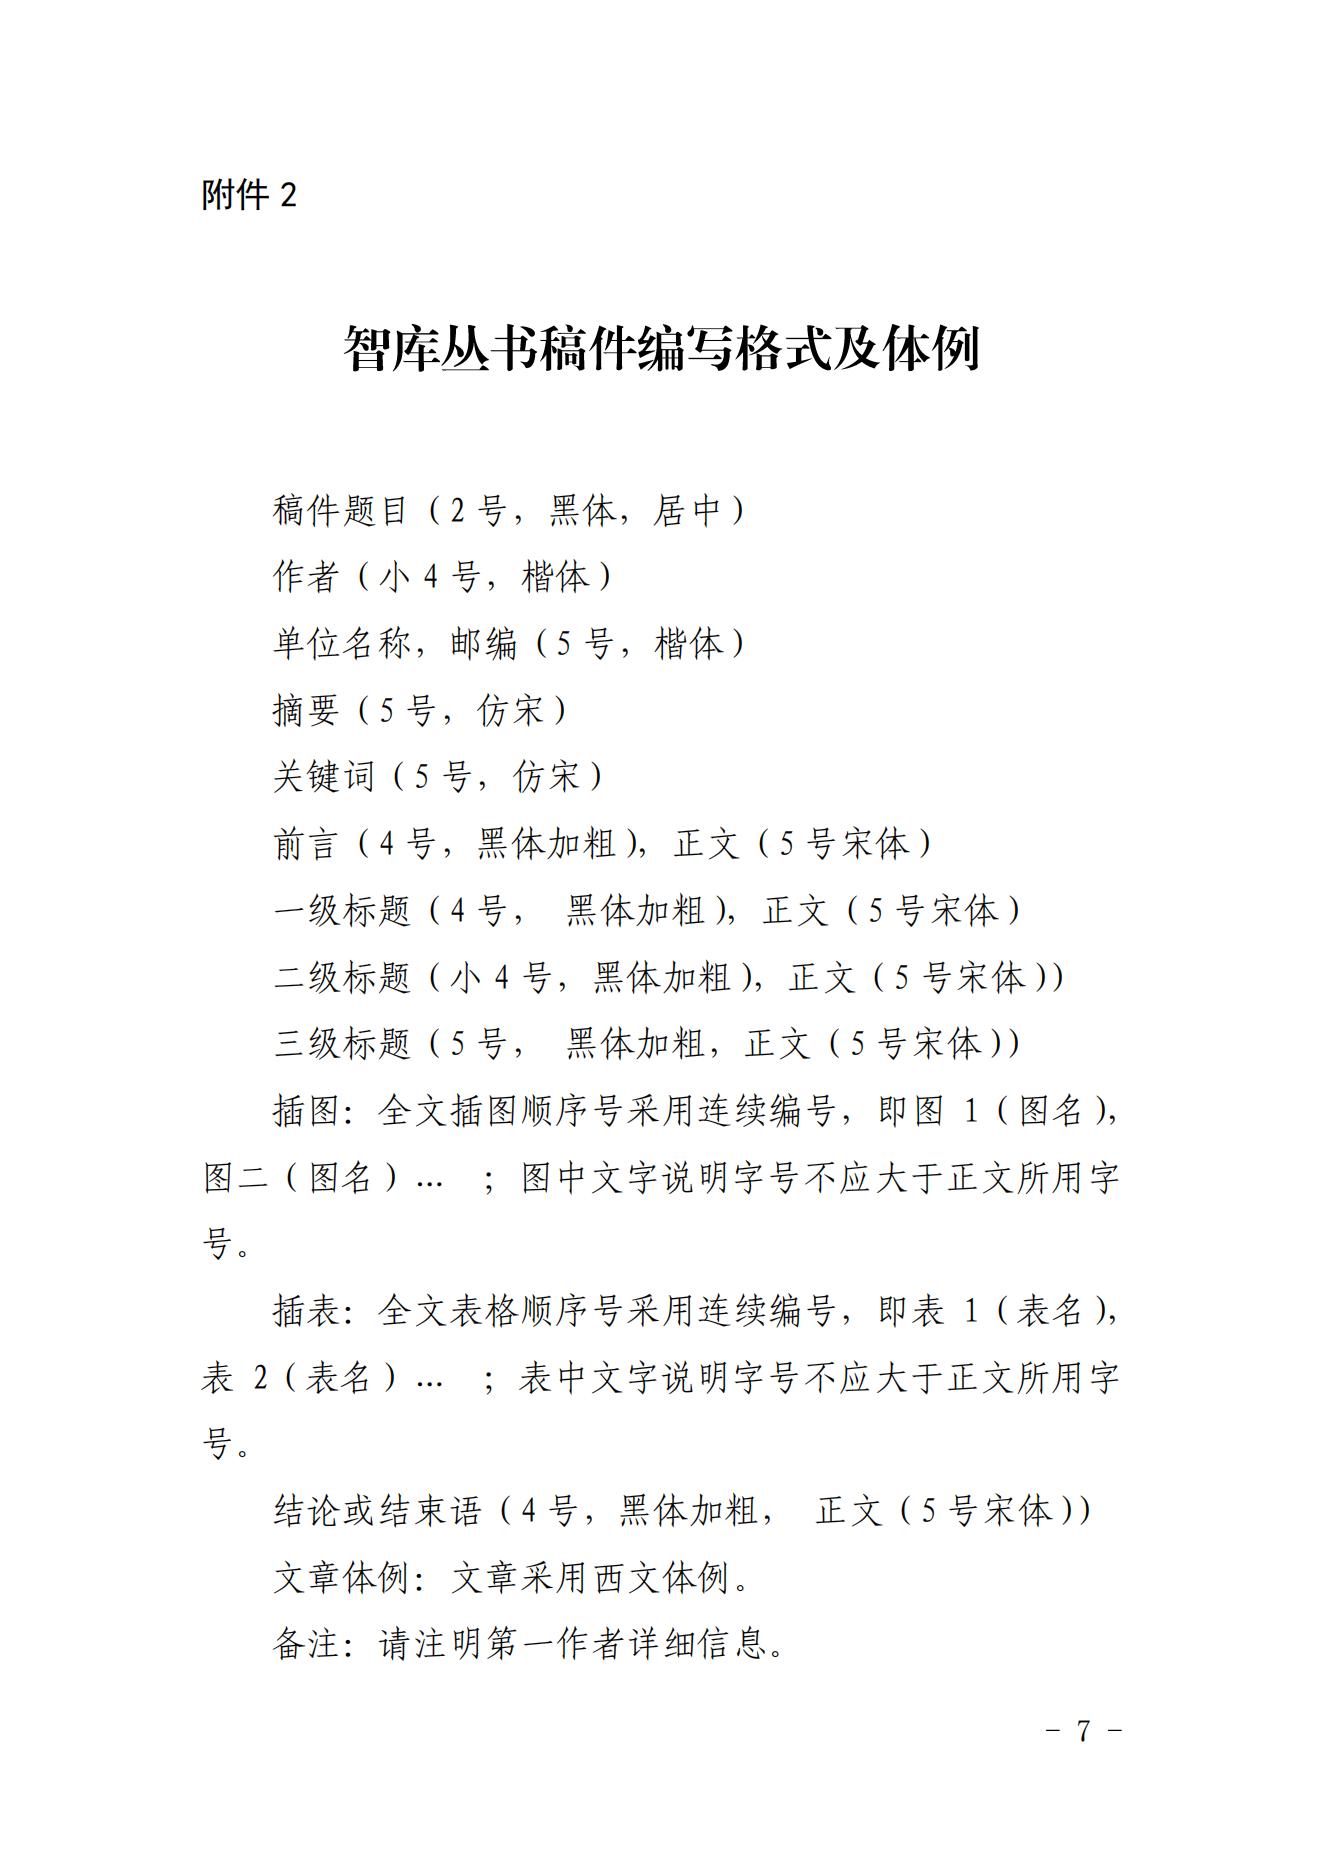 关于《中国核能行业智库丛书》（第五卷）征稿的函_06.jpg